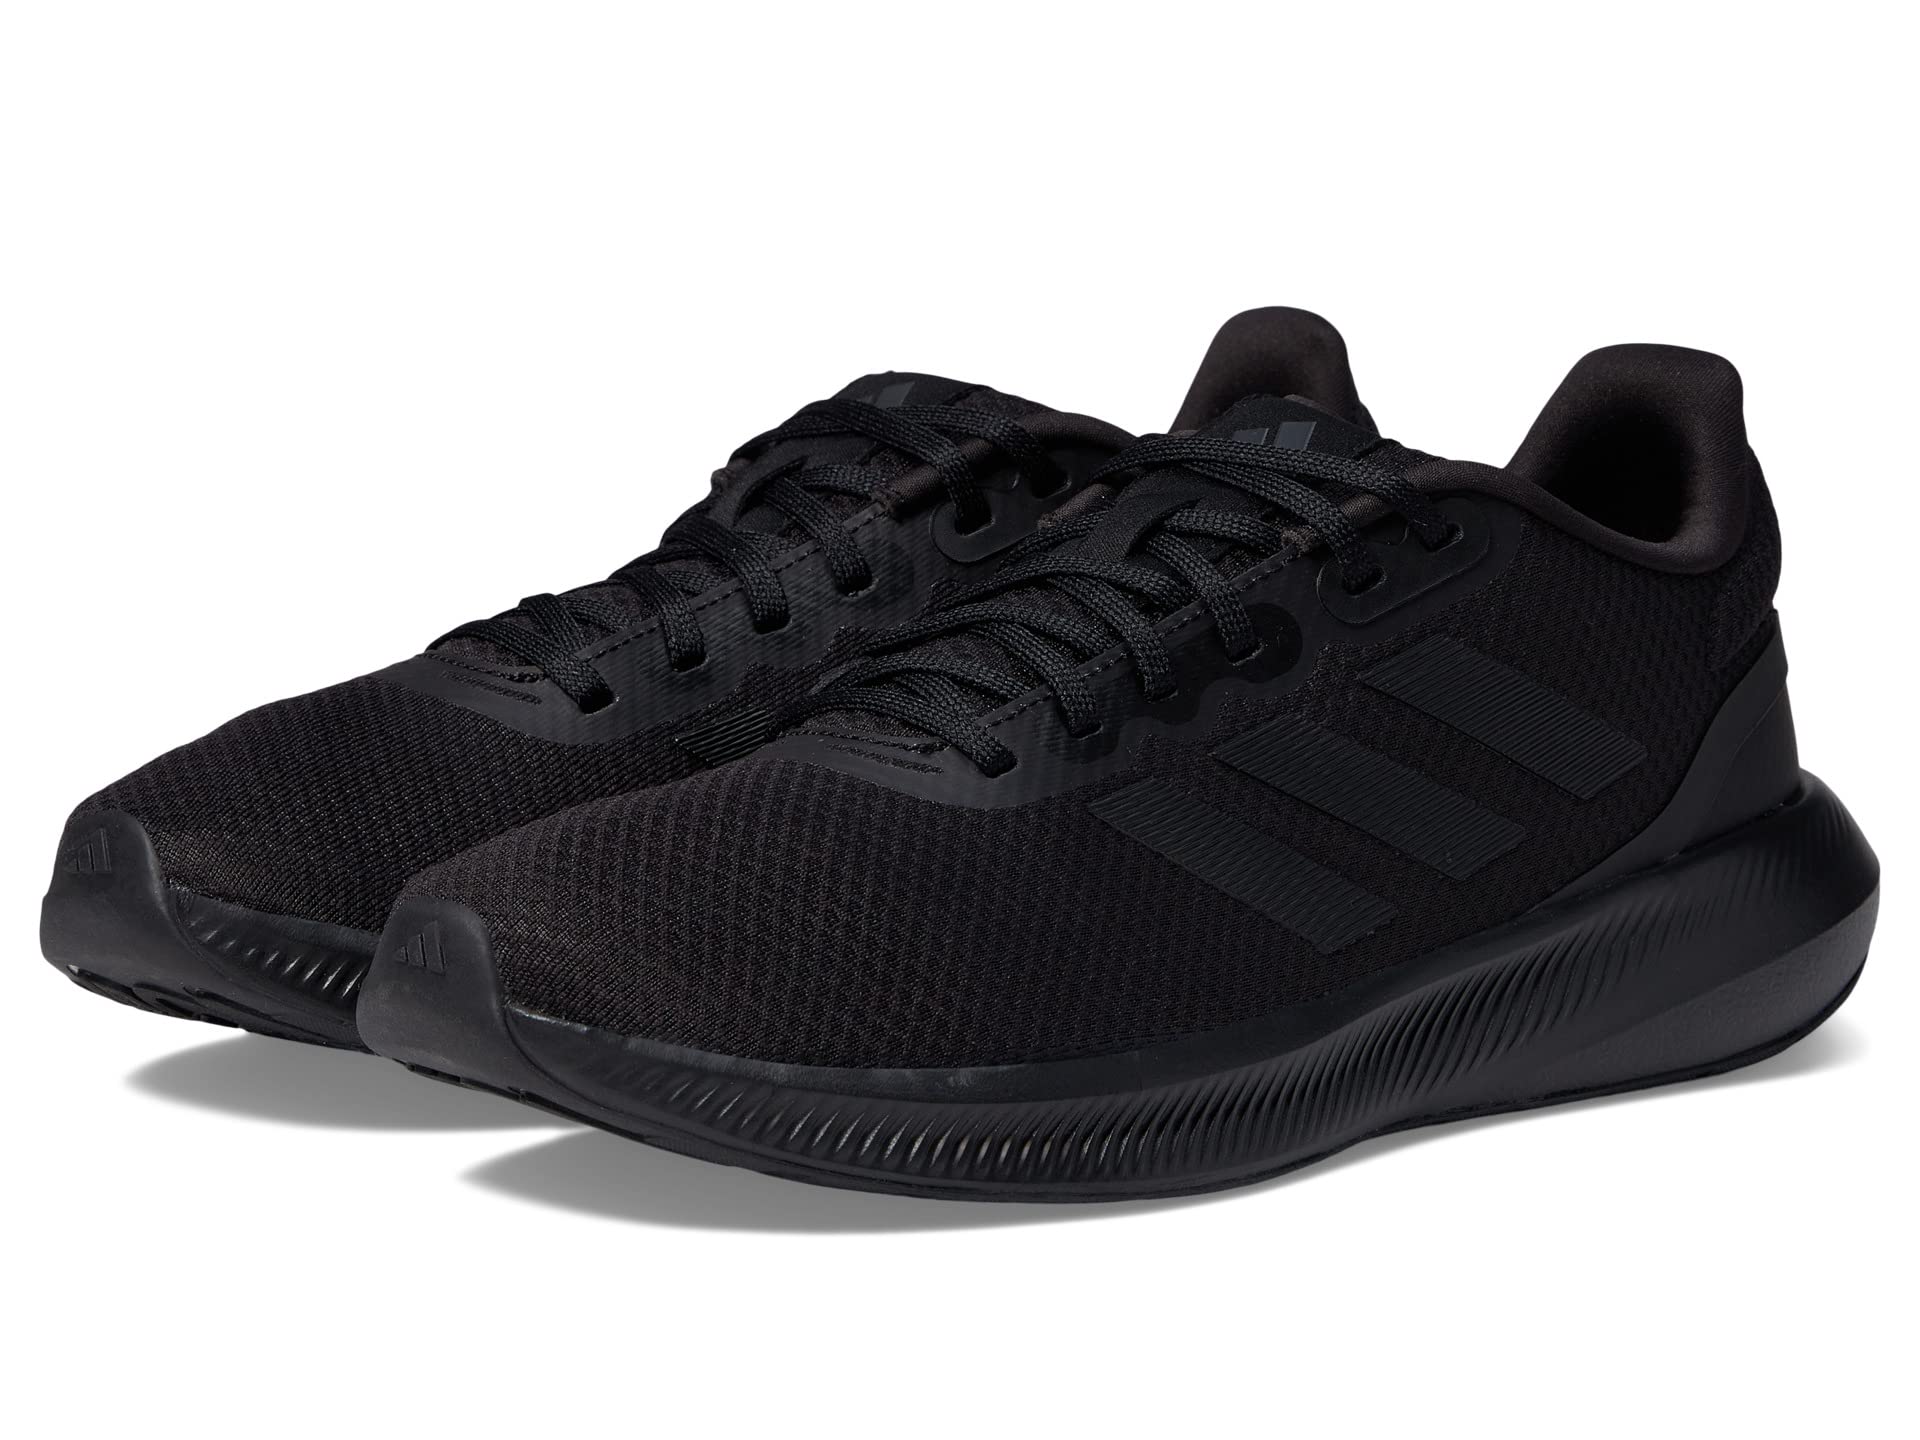 Беговые кроссовки Runfalcon 3.0 от Adidas для мужчин Adidas